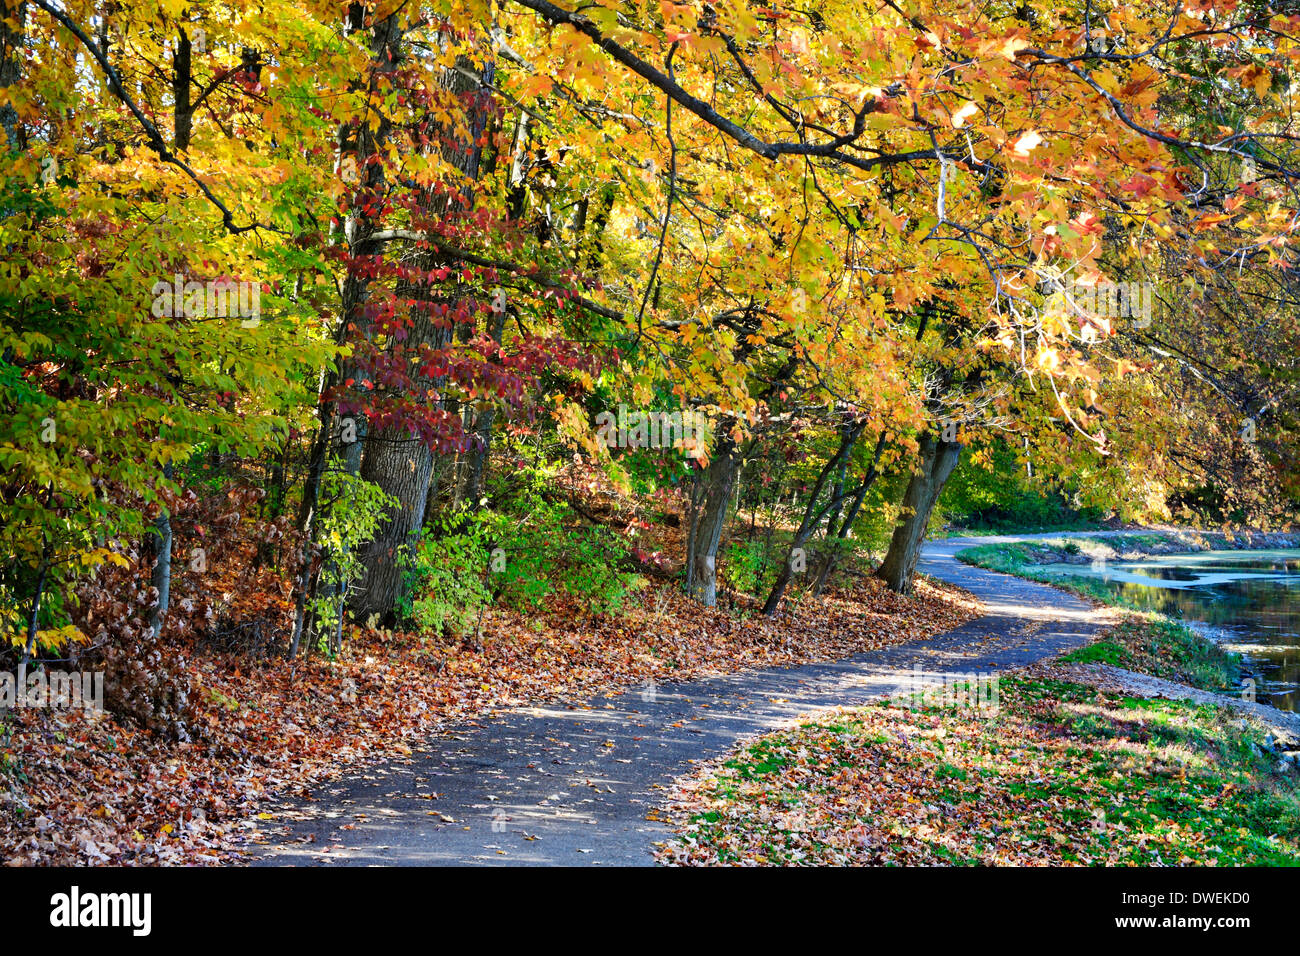 Un percorso a piedi lungo un lago in una giornata di sole in mezzo i brillanti colori dell'autunno, Sharon boschi, Southwestern Ohio, Stati Uniti d'America Foto Stock